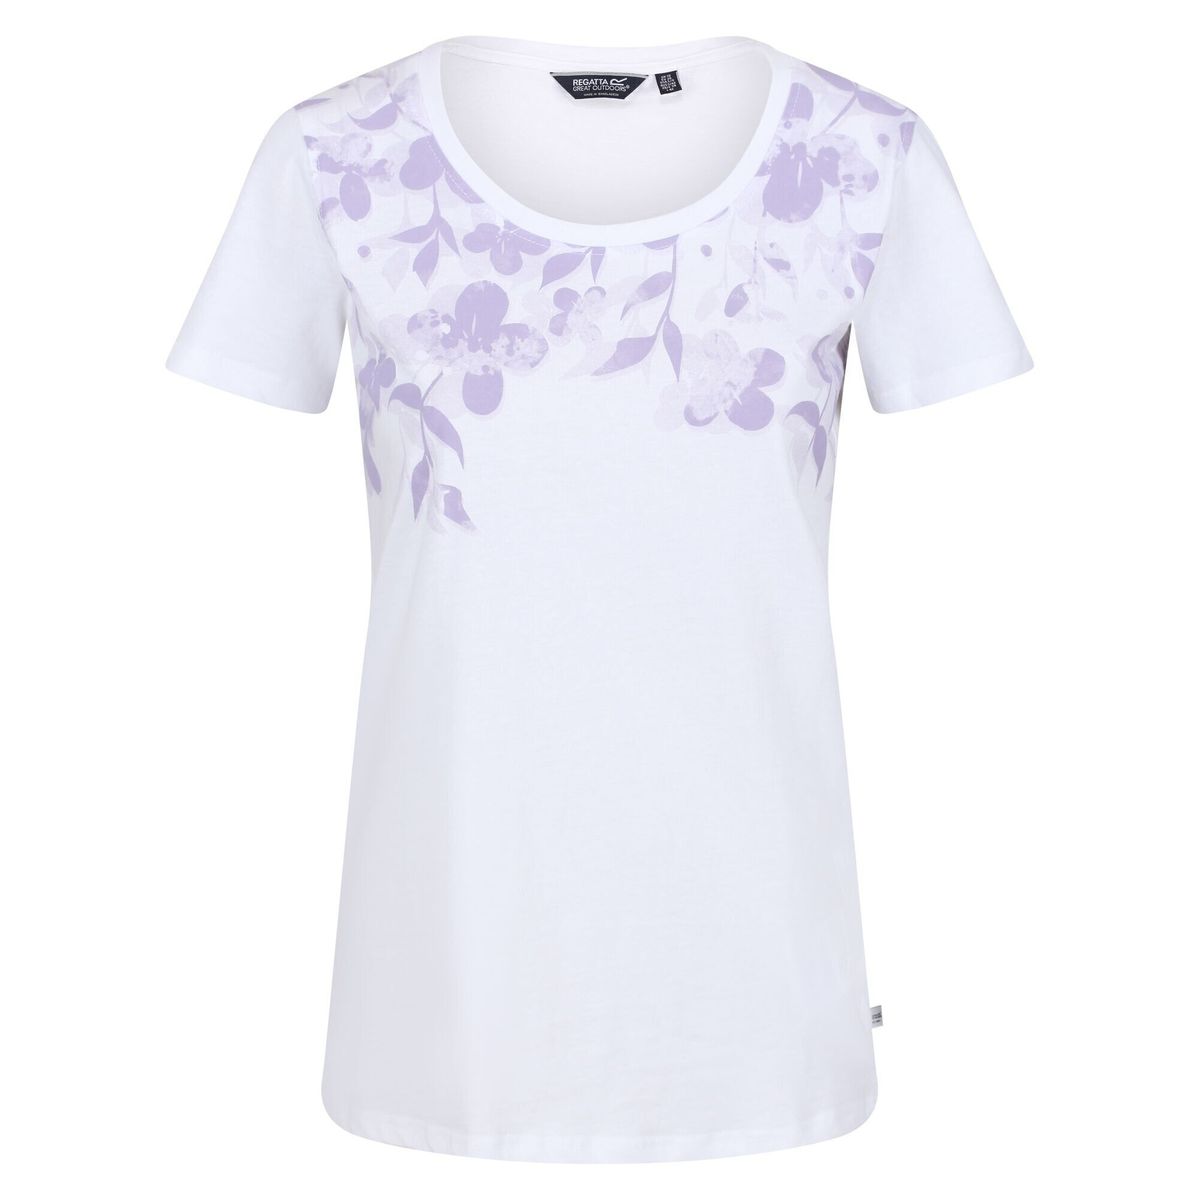 La Redoute Femme Vêtements Tops & T-shirts T-shirts Manches courtes T-shirt FILANDRA 